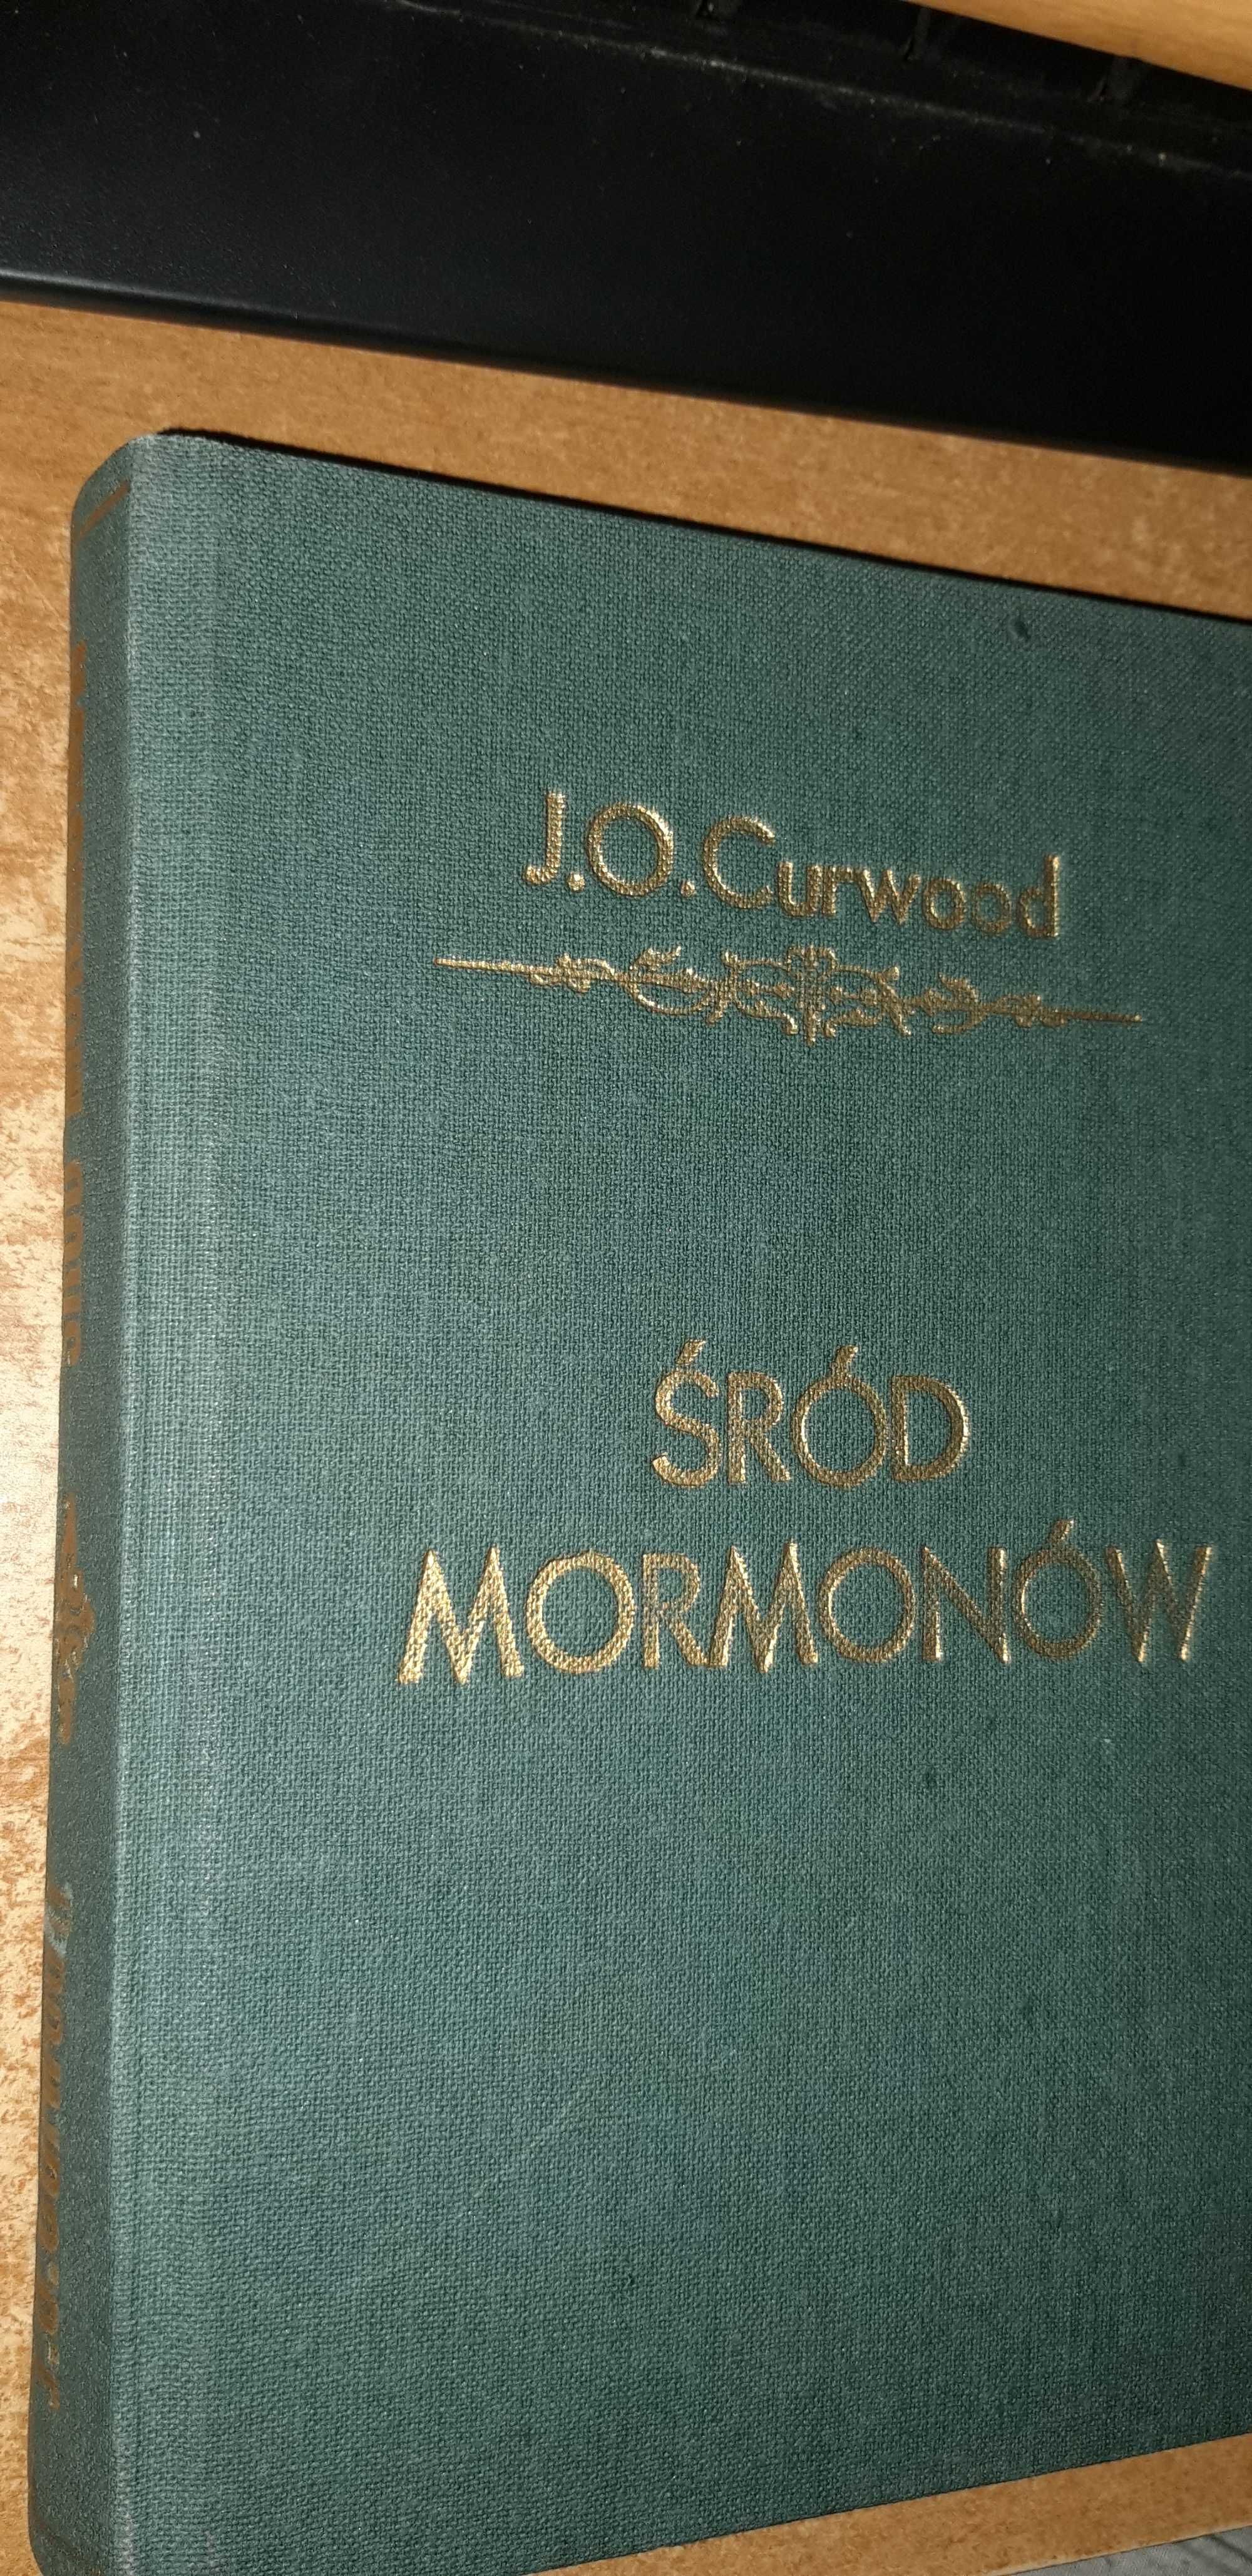 ŚRÓD MORMONÓW -CURWOOD- Pierwodruk z 1931r.,No1691,cudo